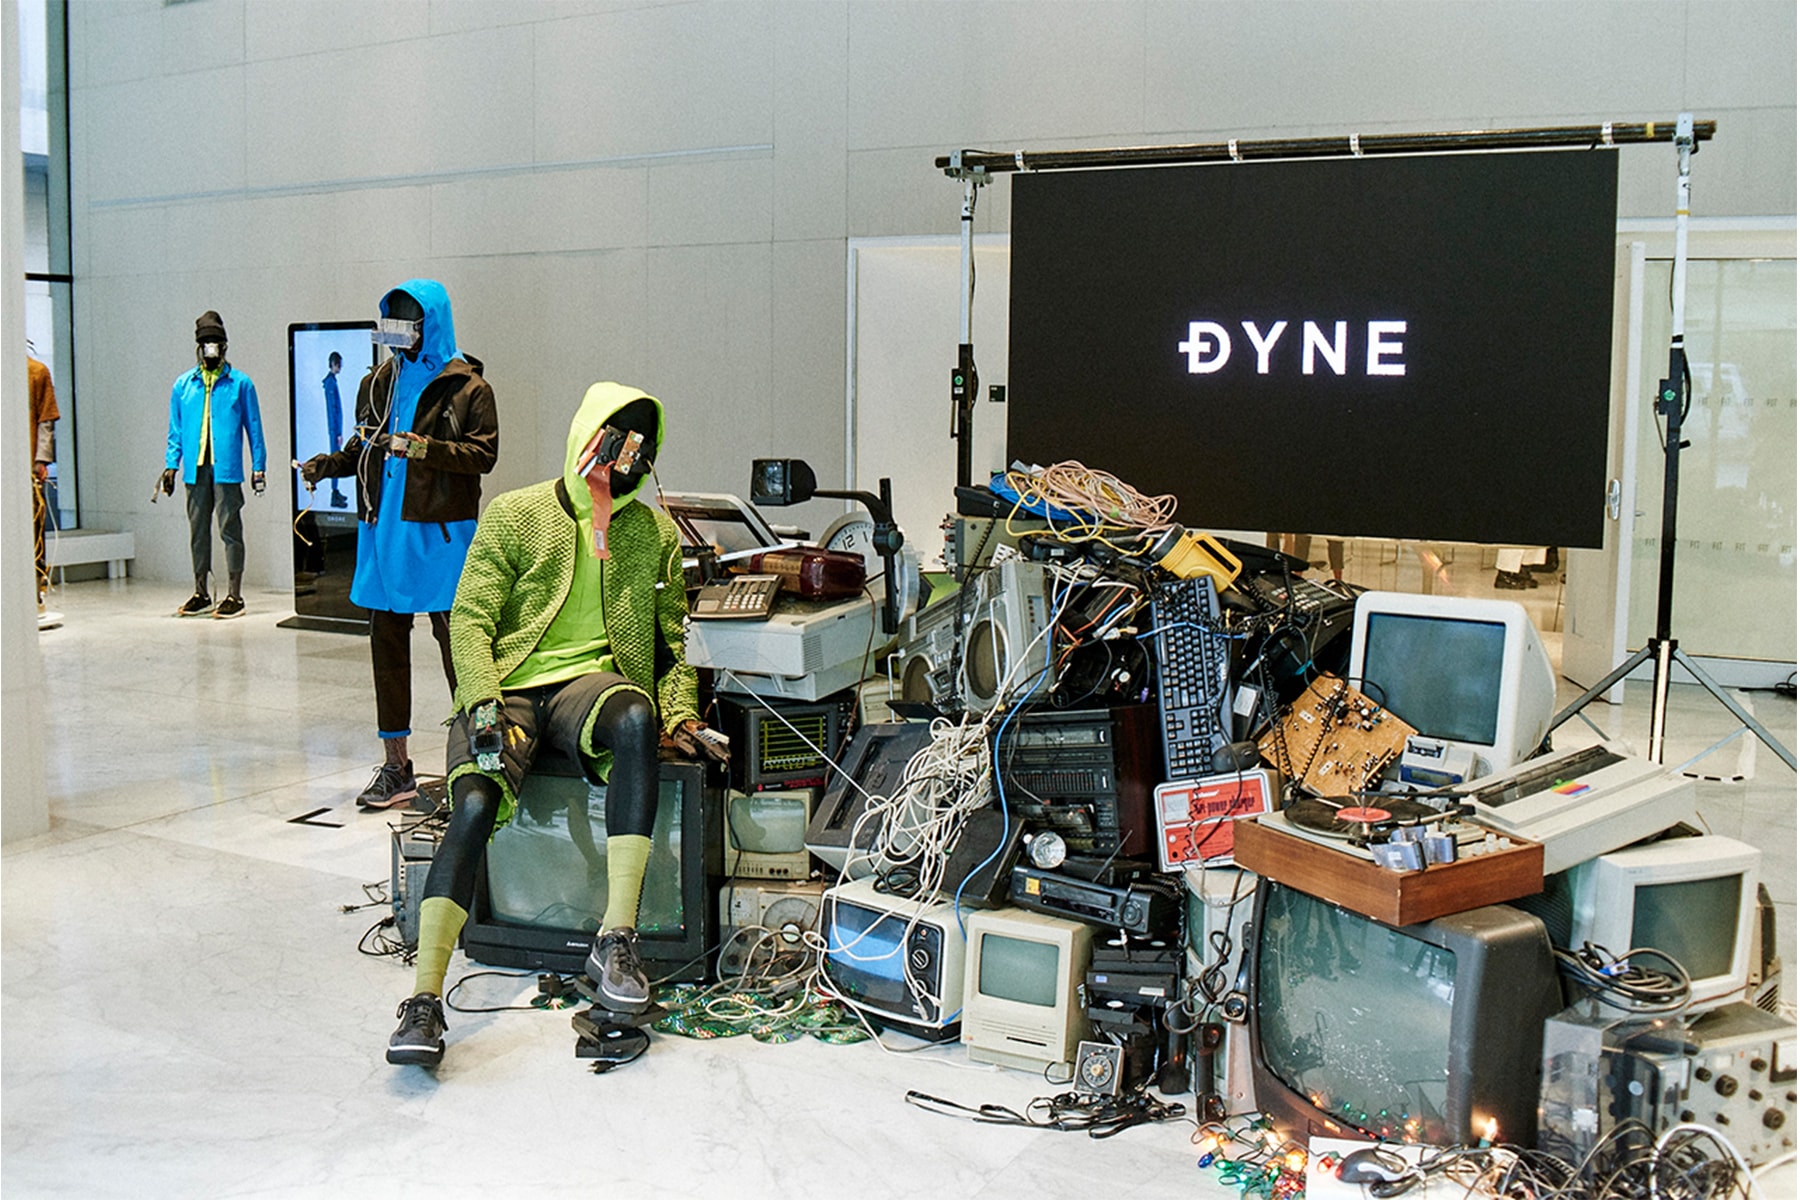 DYNE ダイン 2019年秋冬 コレクション Christopher Bevans クリストファー・ビーバンス ニューヨーク ファッションウィーク